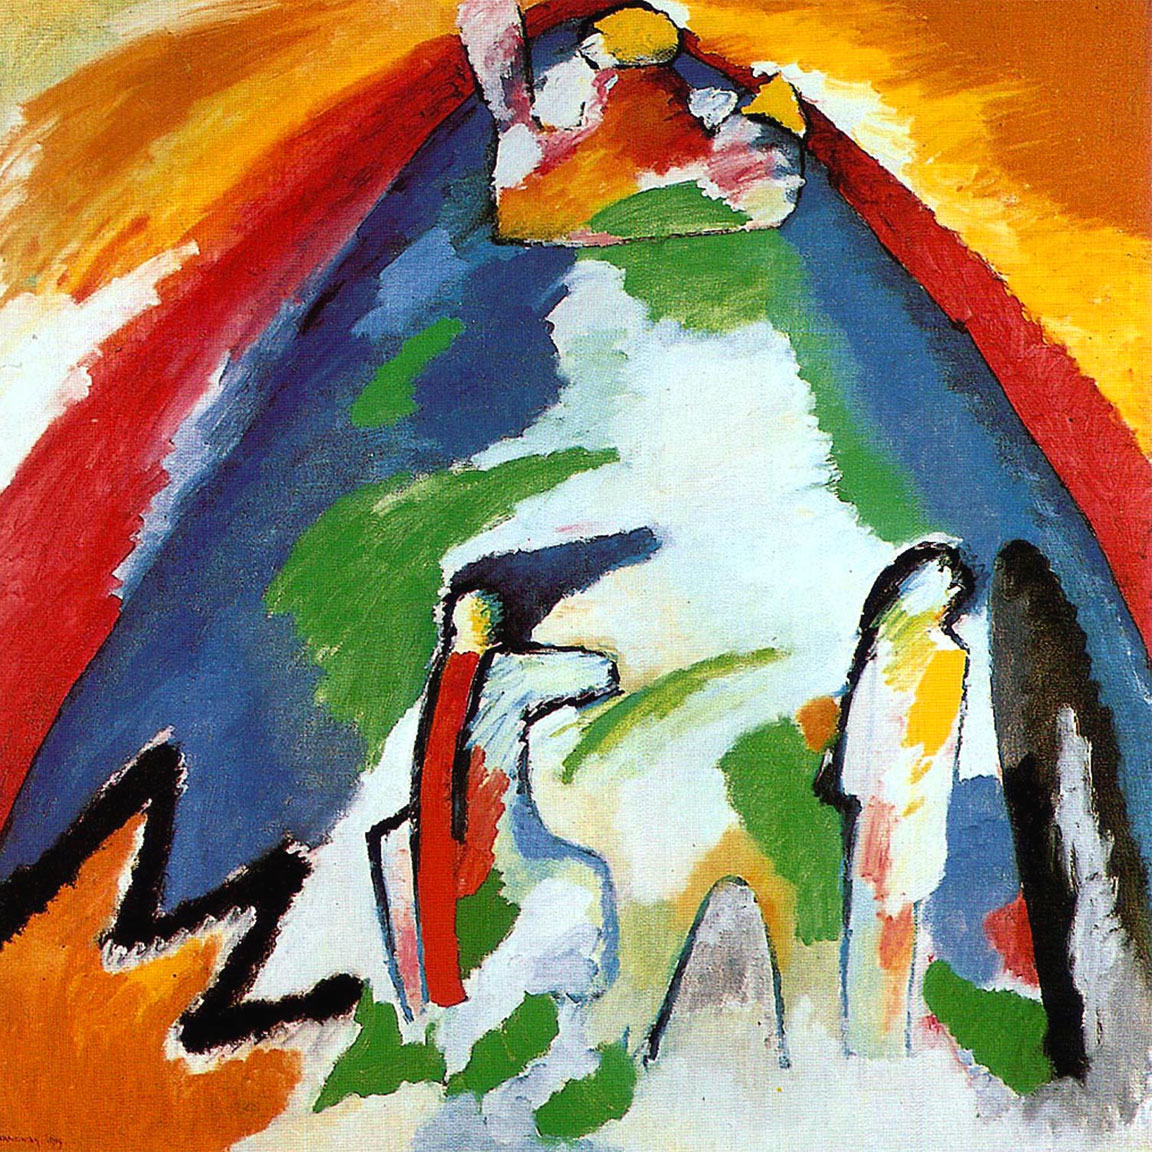 Montagna - Mountain - Kandinsky - 1909